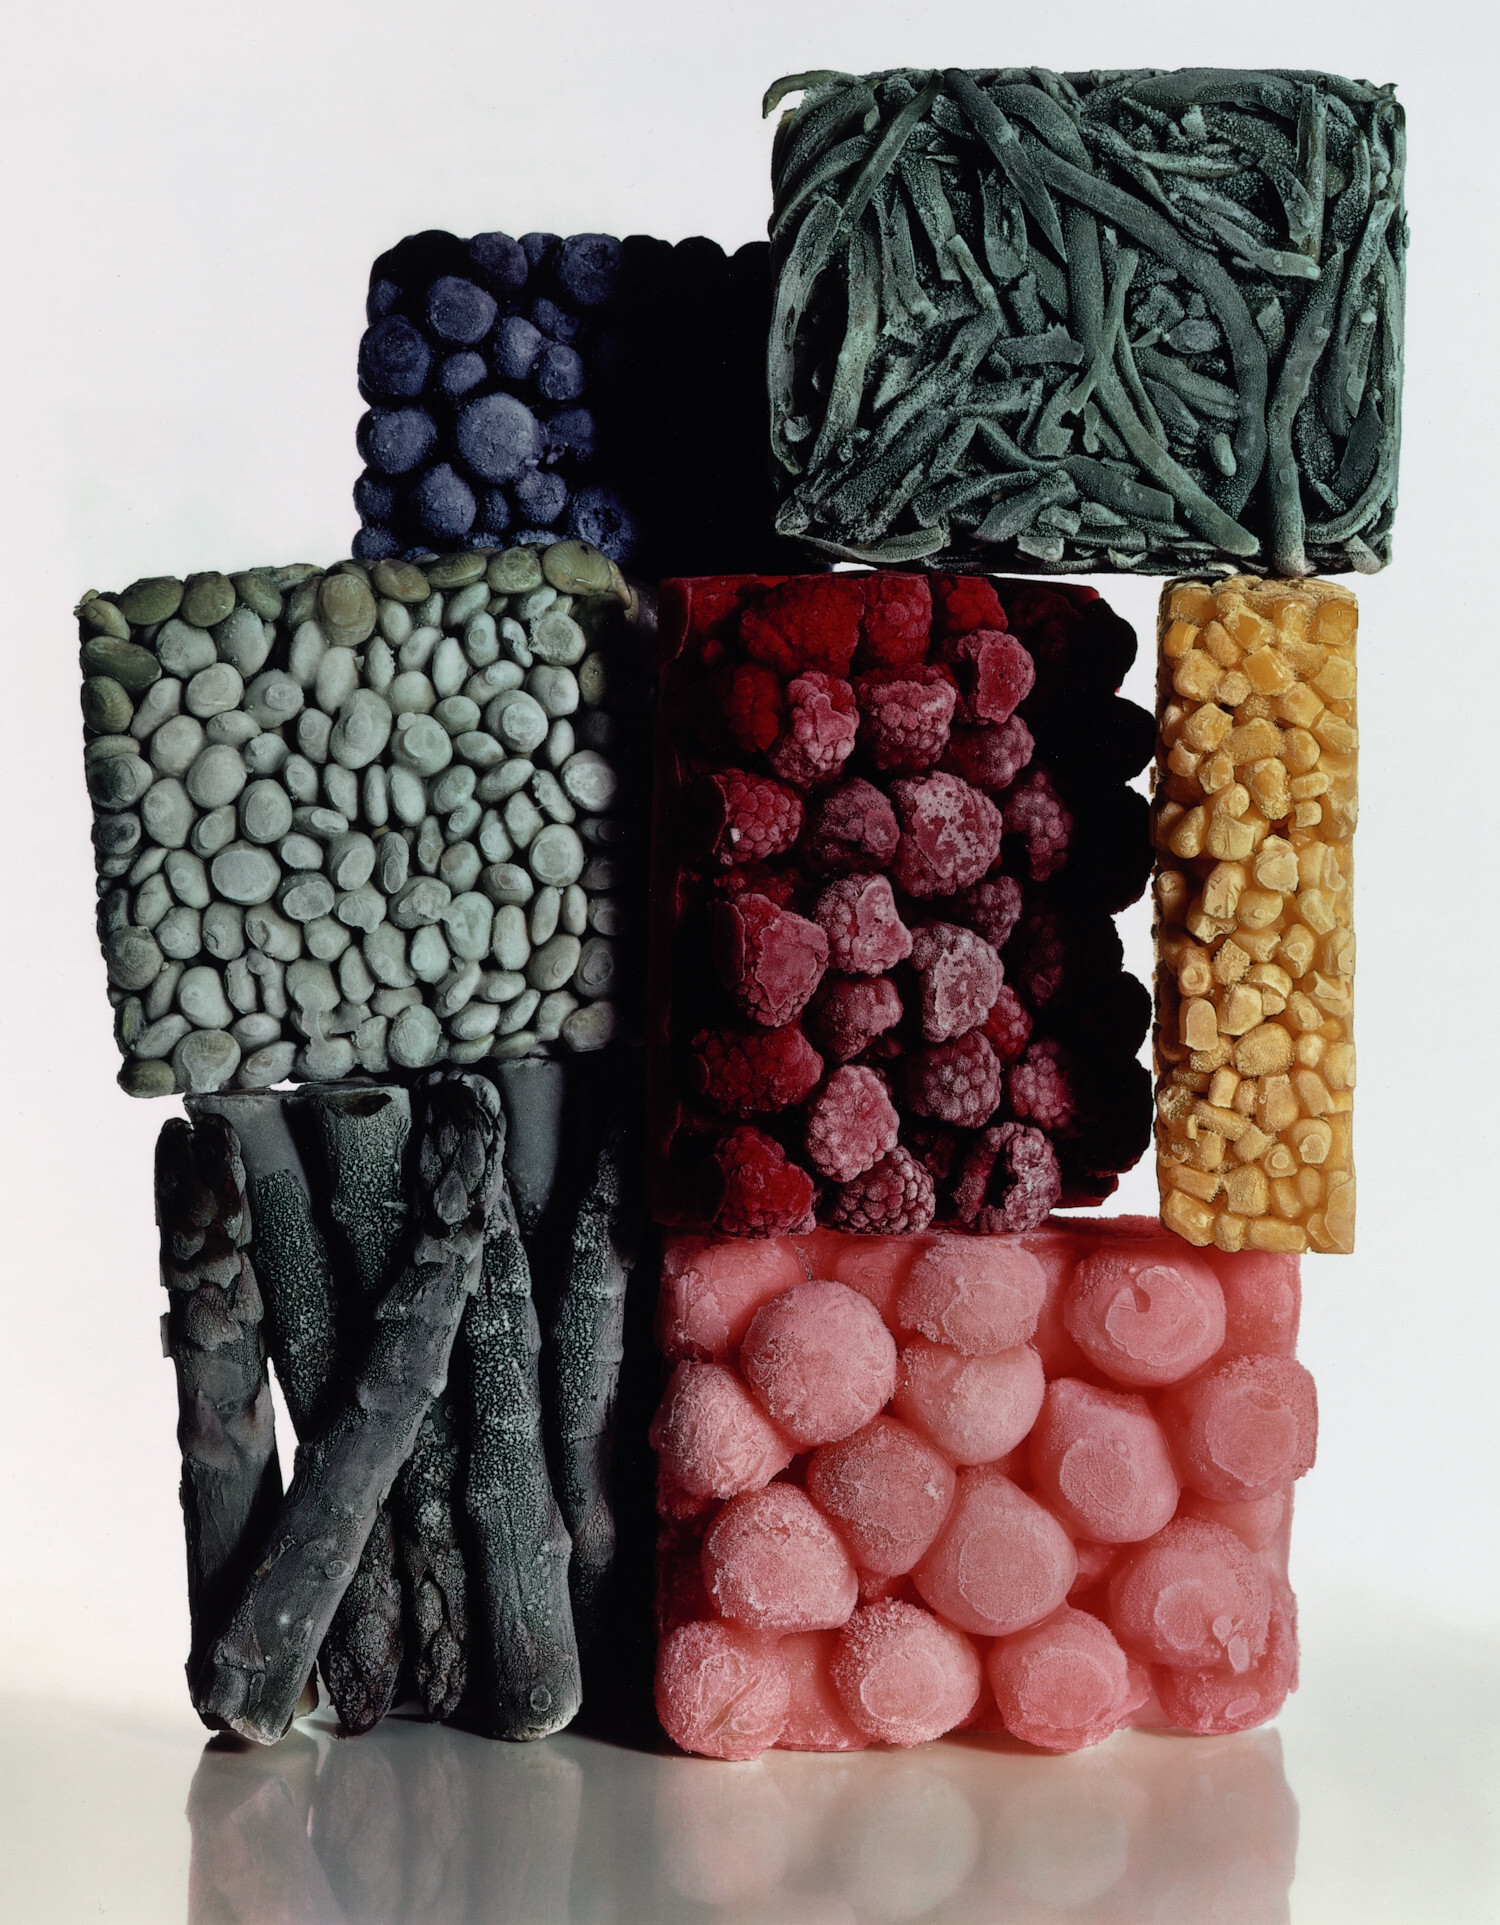 Замороженные продукты со стручковой фасолью, Нью-Йорк, 1977 г. Фотограф Ирвин Пенн